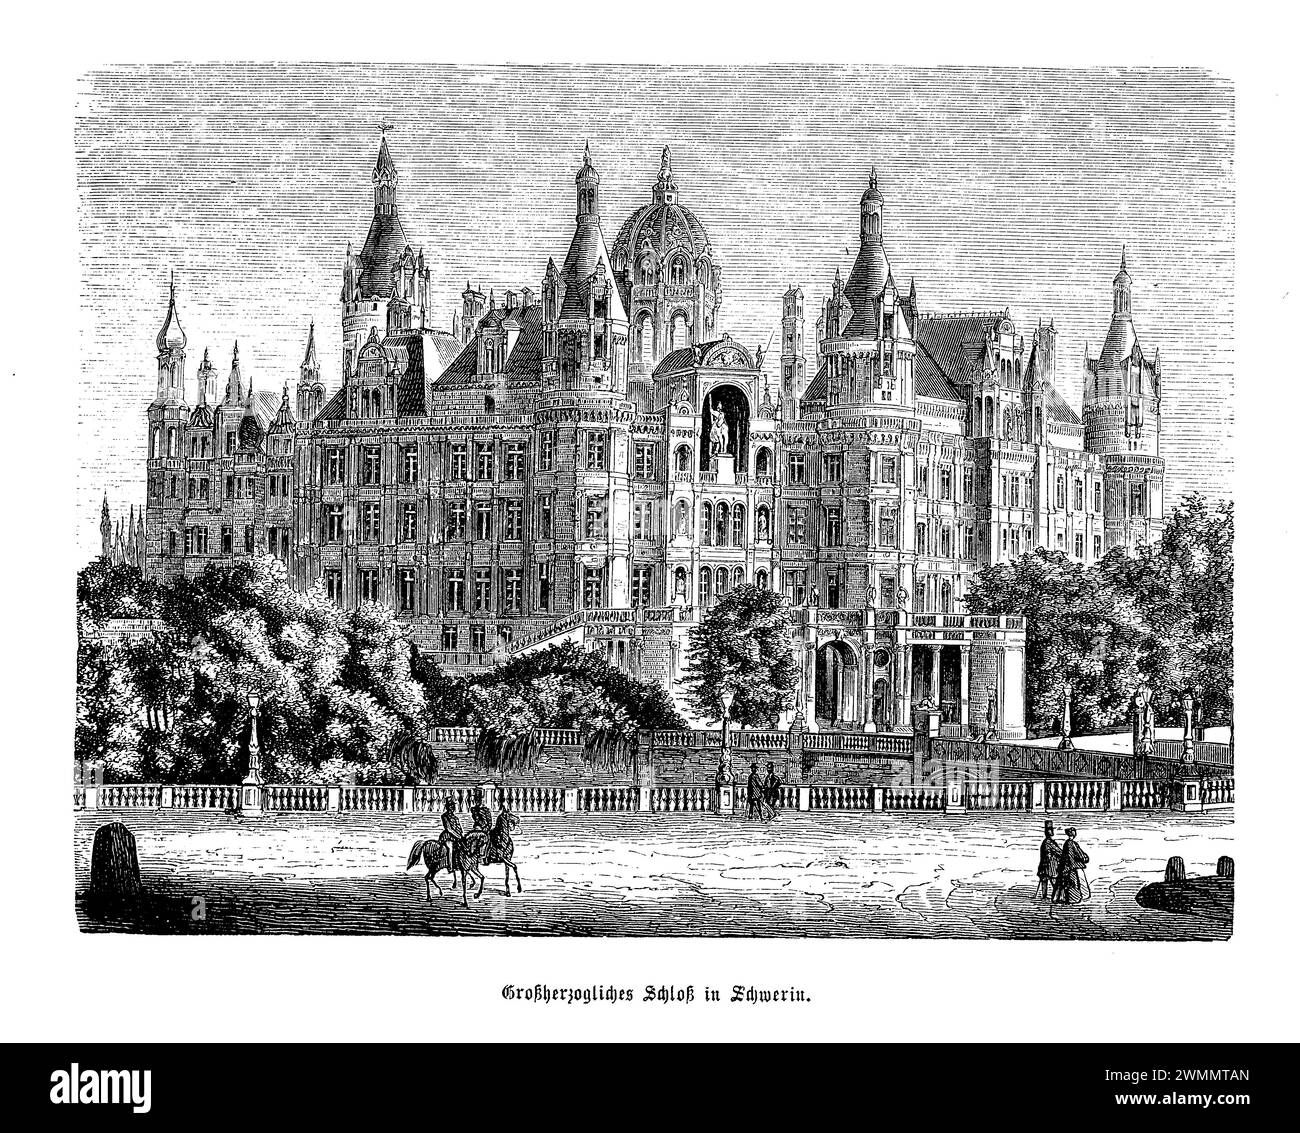 Das Schloss Schwerin liegt in der malerischen Stadt Schwerin in Norddeutschland und ist ein historisches Schloss, das aussieht, als wäre es direkt aus einem Märchen gehoben worden. Mit ihren Fundamenten aus dem 10. Jahrhundert hat die Burg verschiedene Umgestaltungen durchlaufen, die ihren Höhepunkt in ihrem heutigen Zustand als atemberaubendes Beispiel des romantischen Historismus haben. Eingebettet auf einer Insel im Schweriner See, umgeben von üppigen Gärten und aufwendigen Skulpturen, ist das Schloss ein Symbol für die Pracht und Geschichte Mecklenburg-Vorpommerns. Einst die Heimat der Herzöge und Großherzöge. Stockfoto